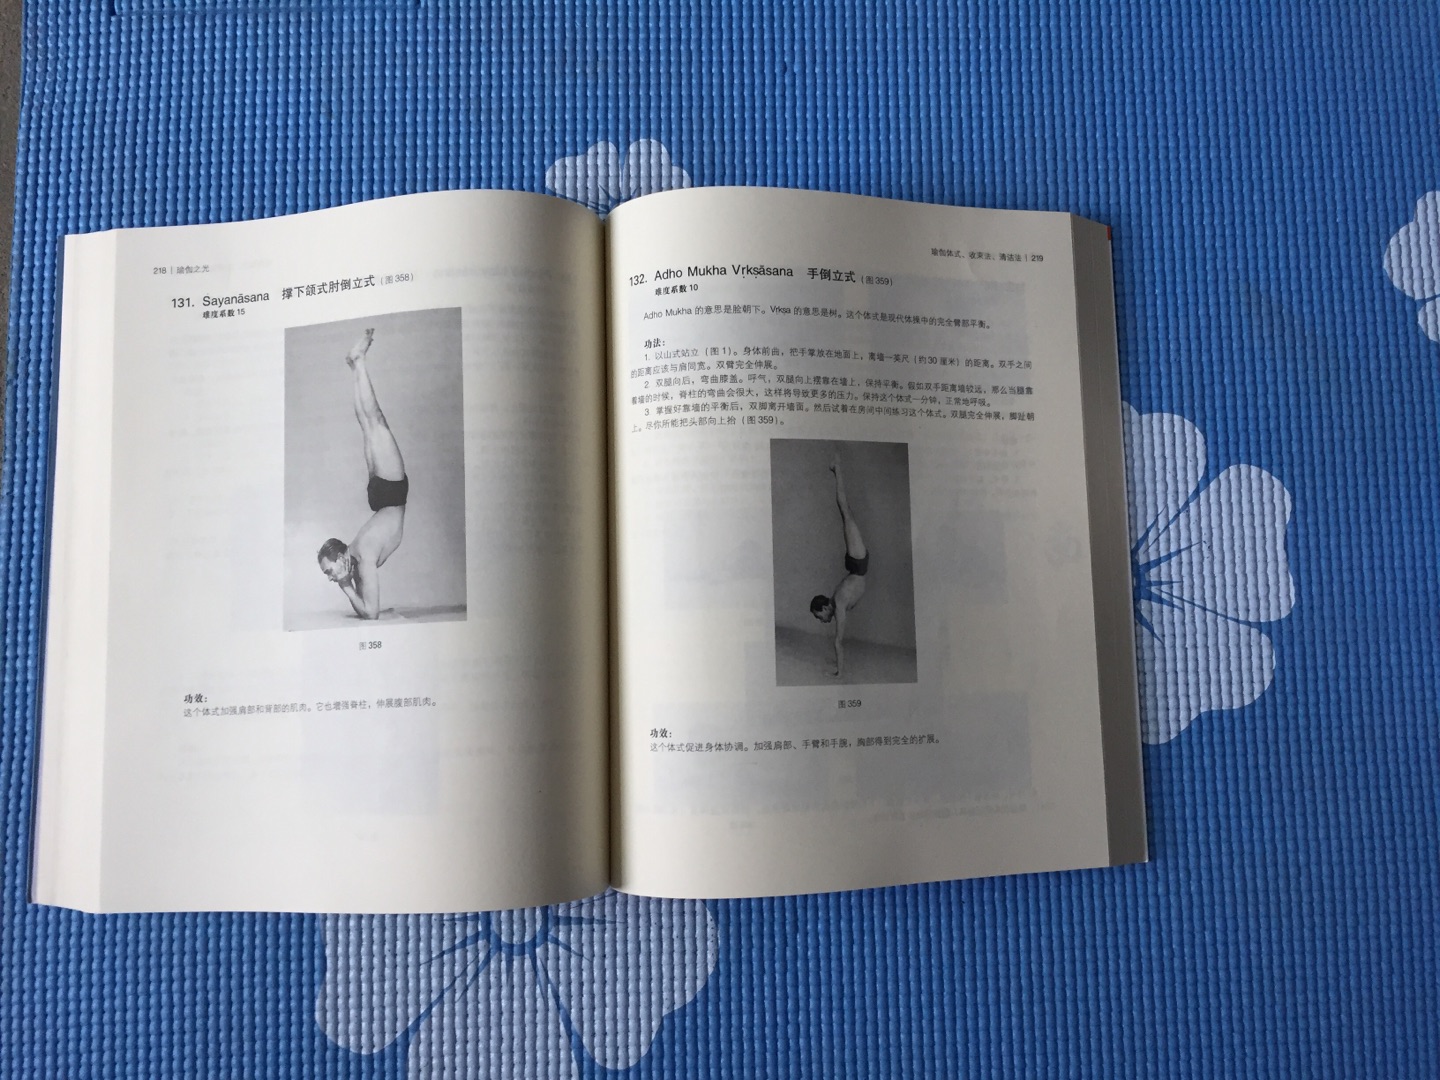 非常好的一本瑜伽教手科书，由浅入广深，系统而科学，值得收藏。